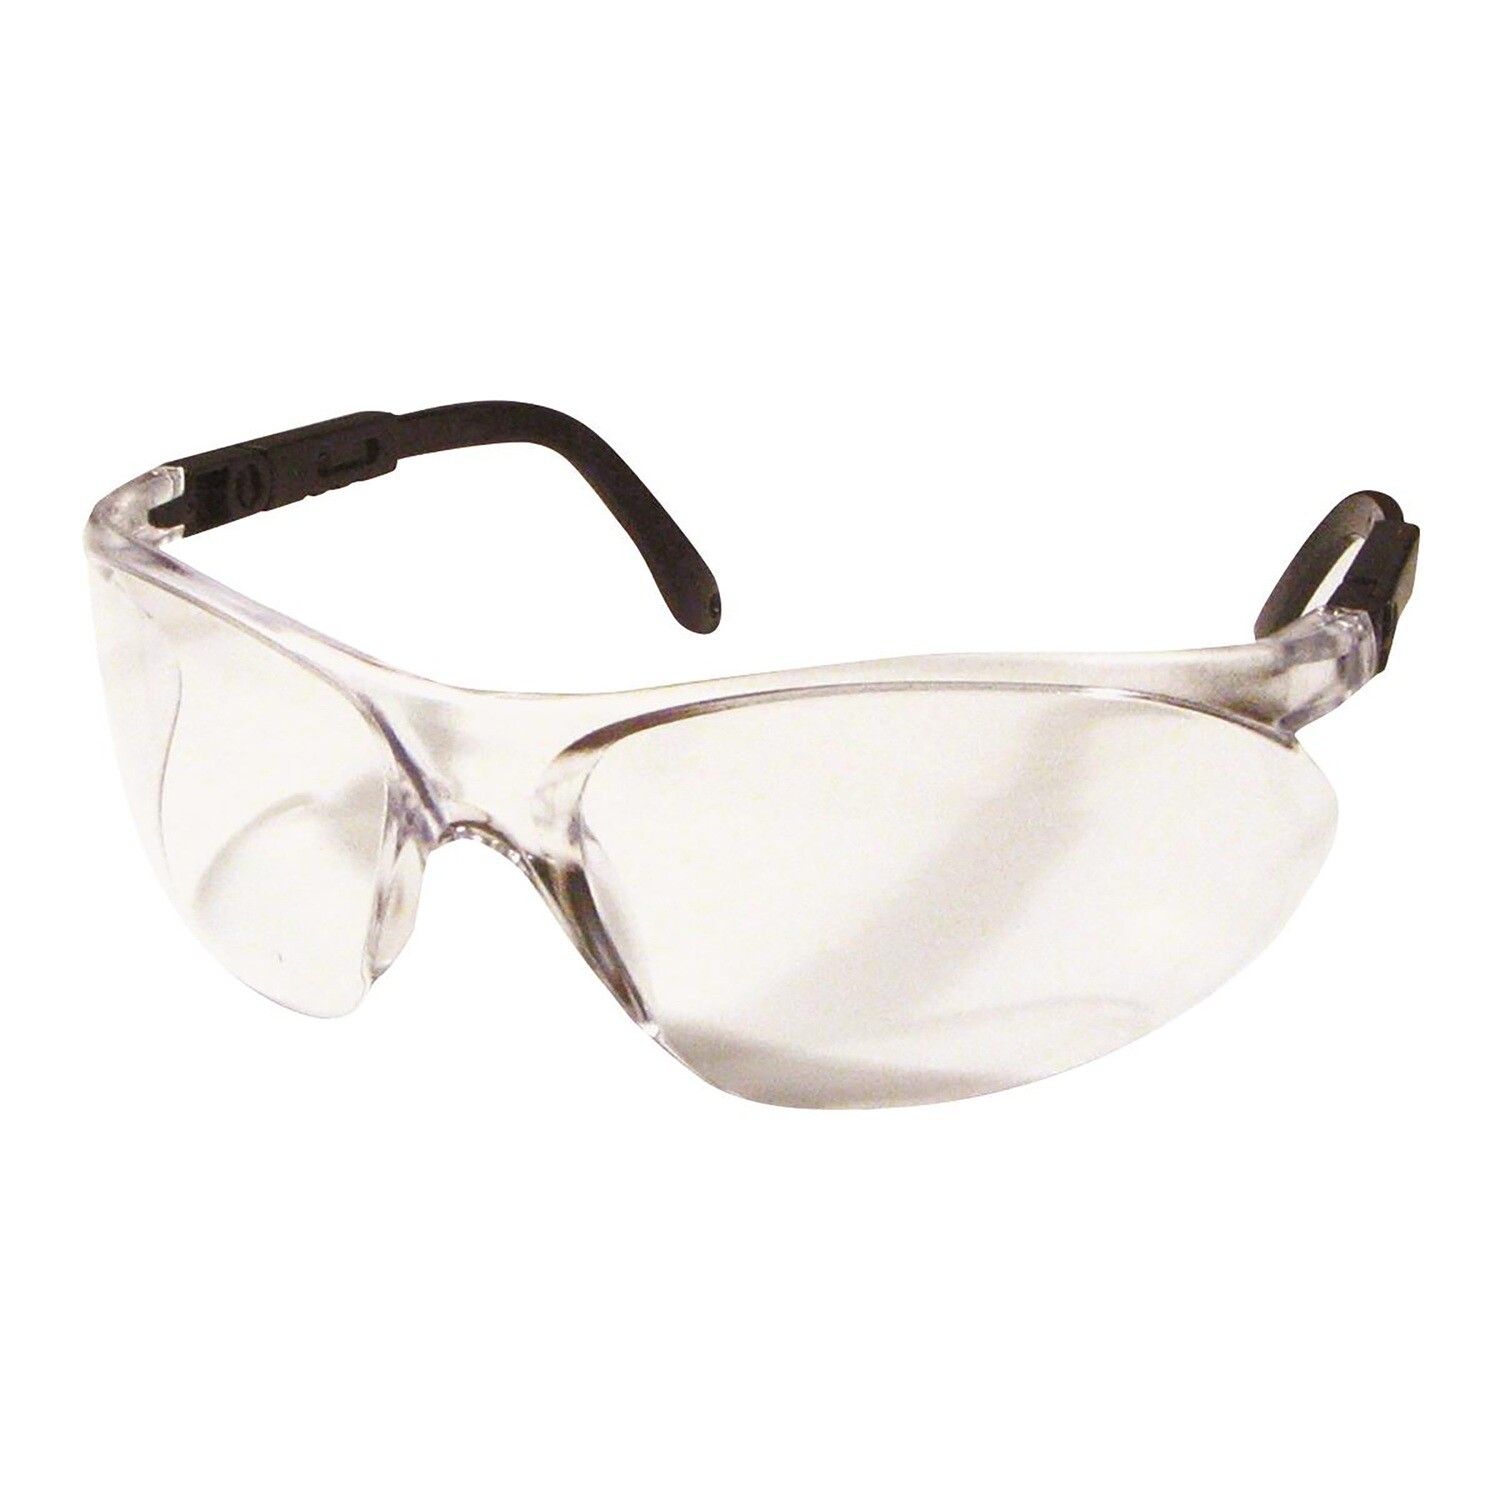 Dentec Safety Glasses - 12E93201